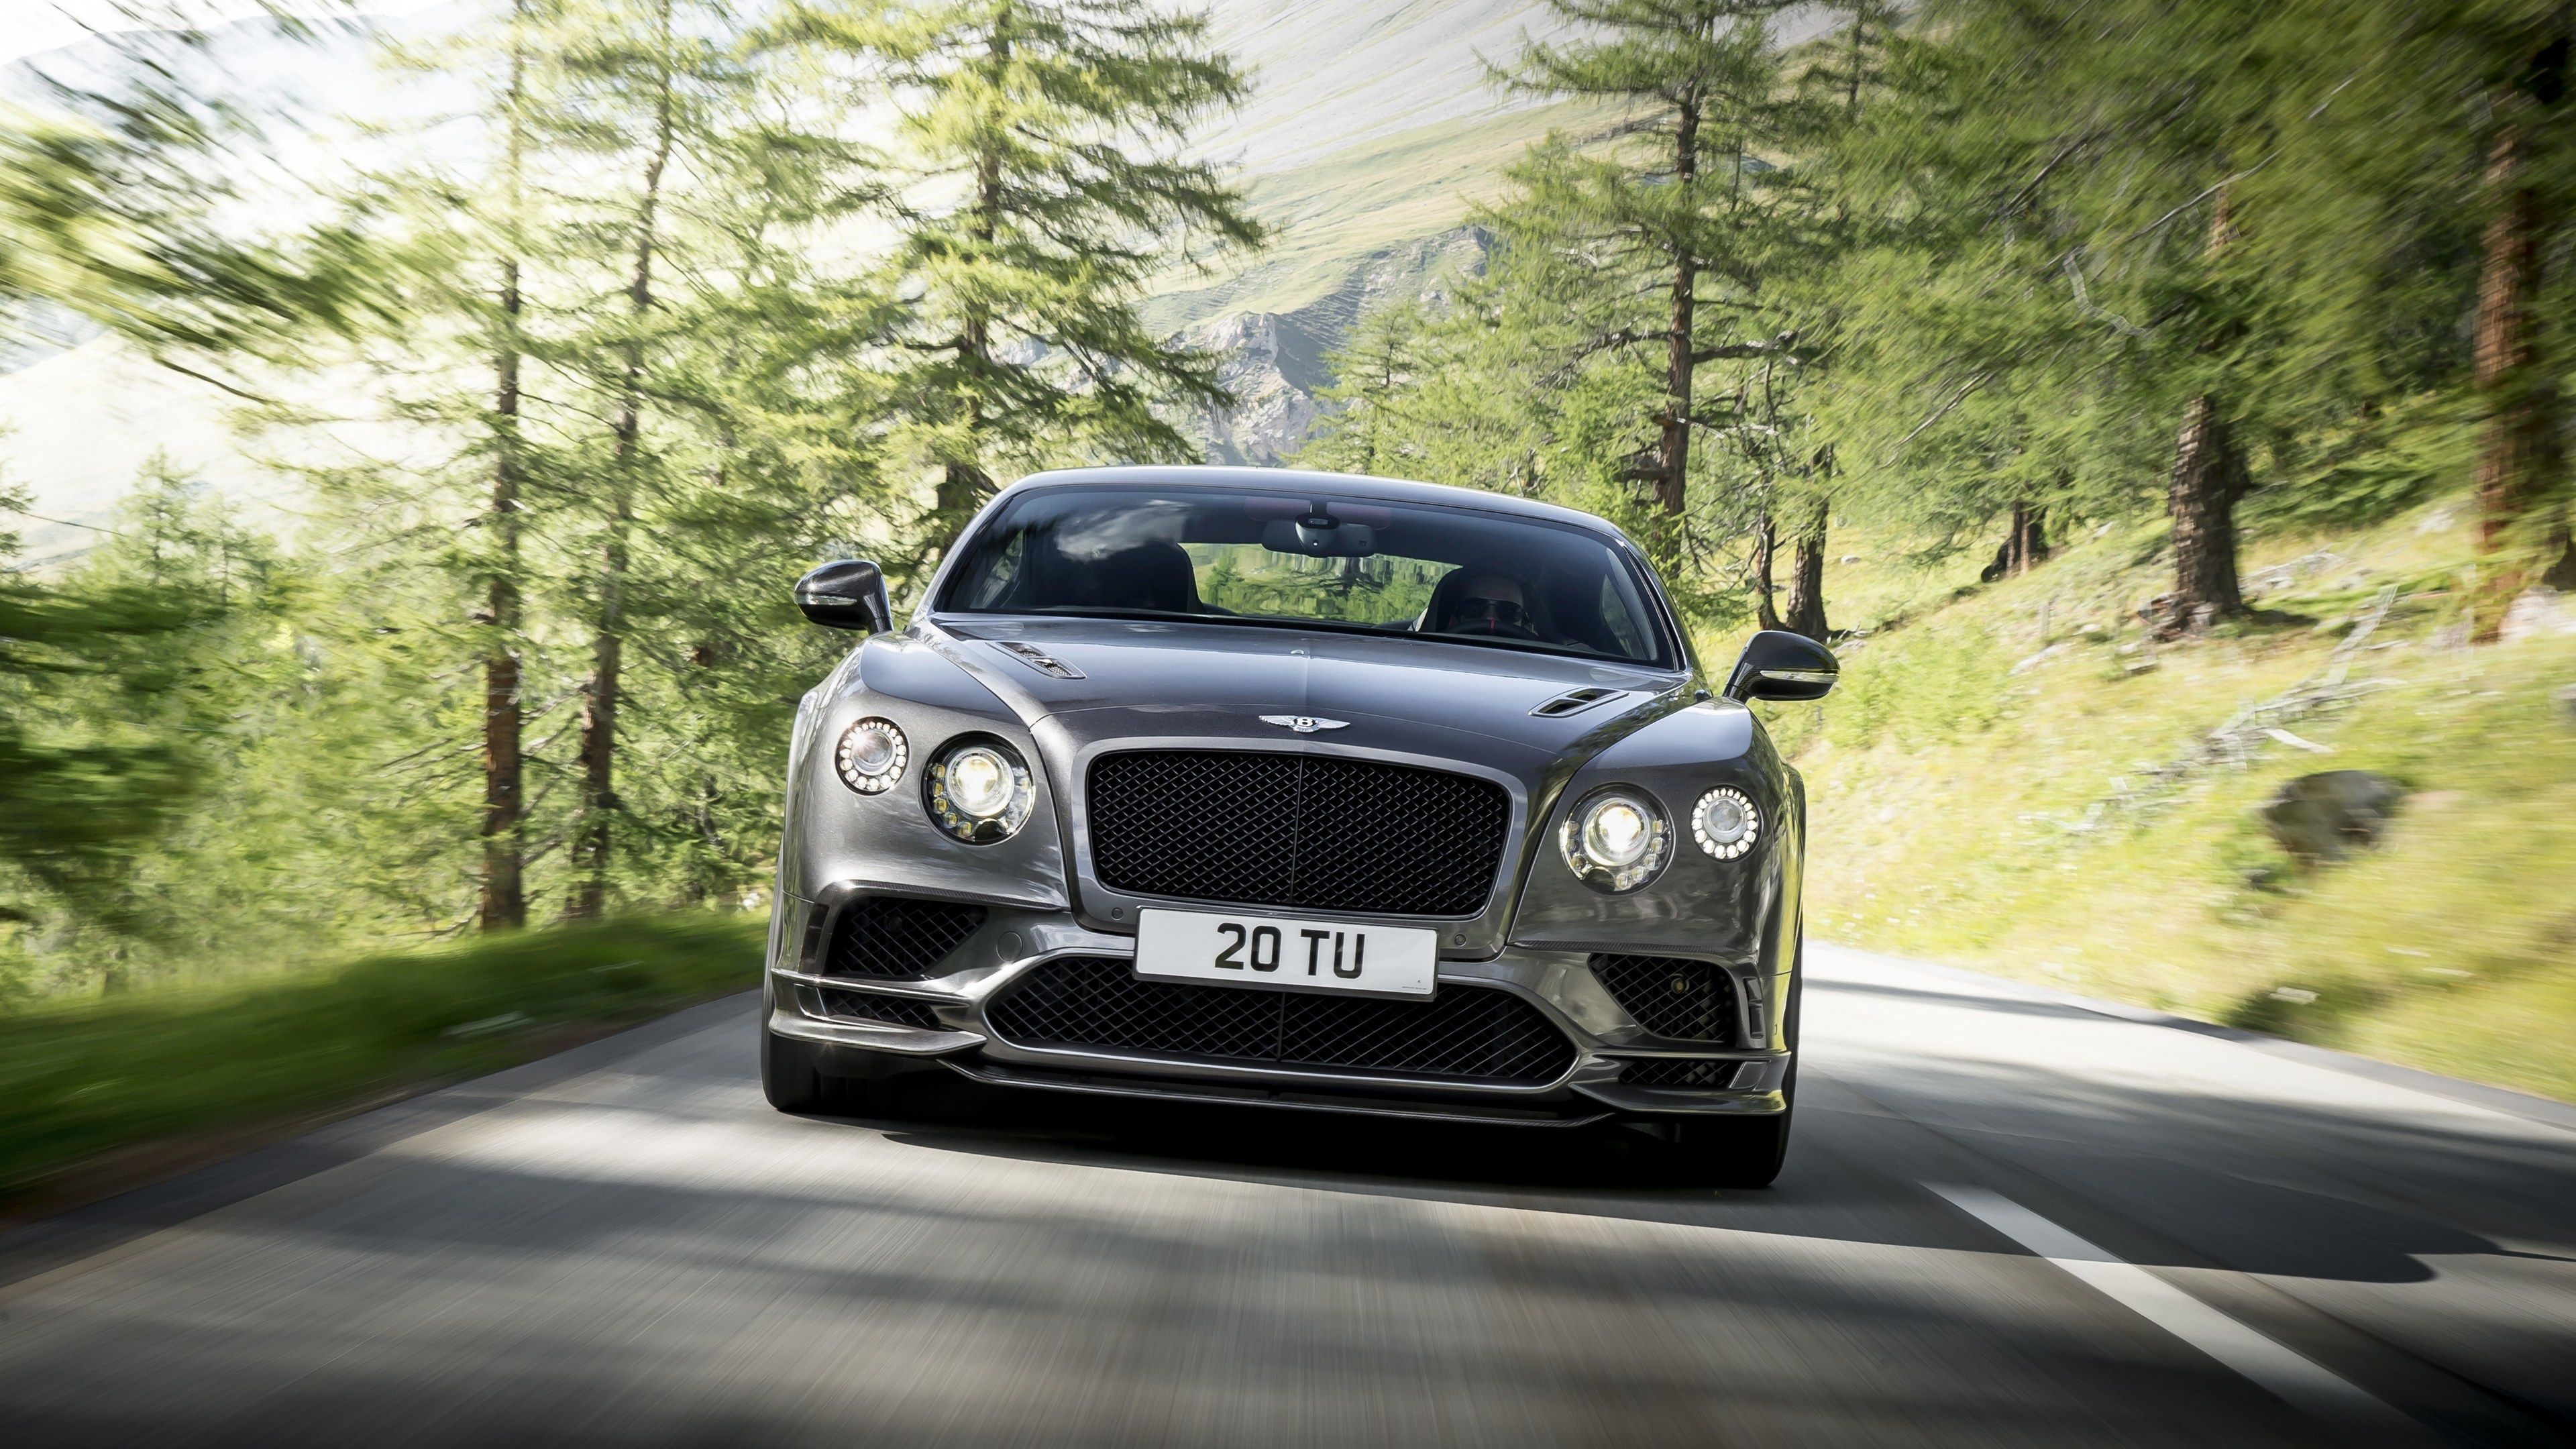 Bentley Continental, GT Supersport, HD wallpapers, Speed and luxury, 3840x2160 4K Desktop